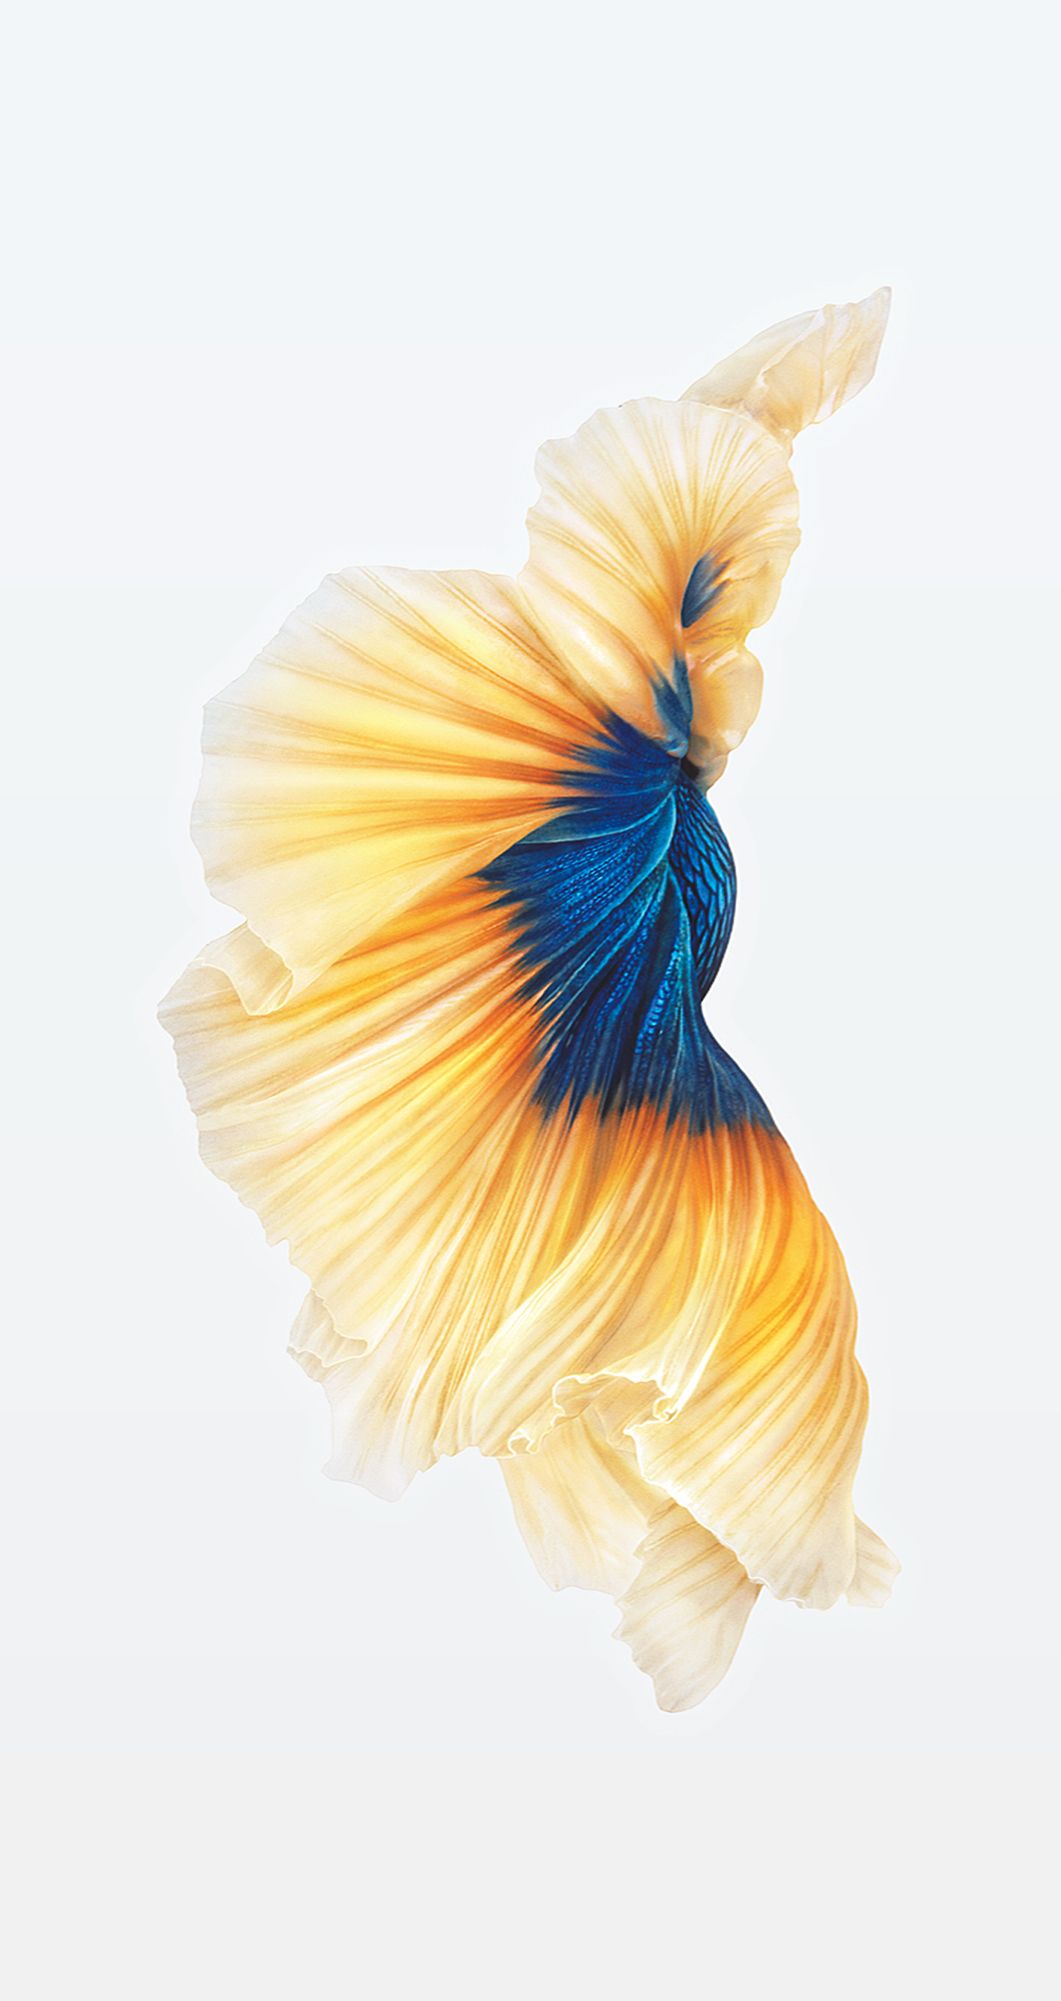 sfondo predefinito per iphone 6s,bianca,blu,giallo,arancia,turchese